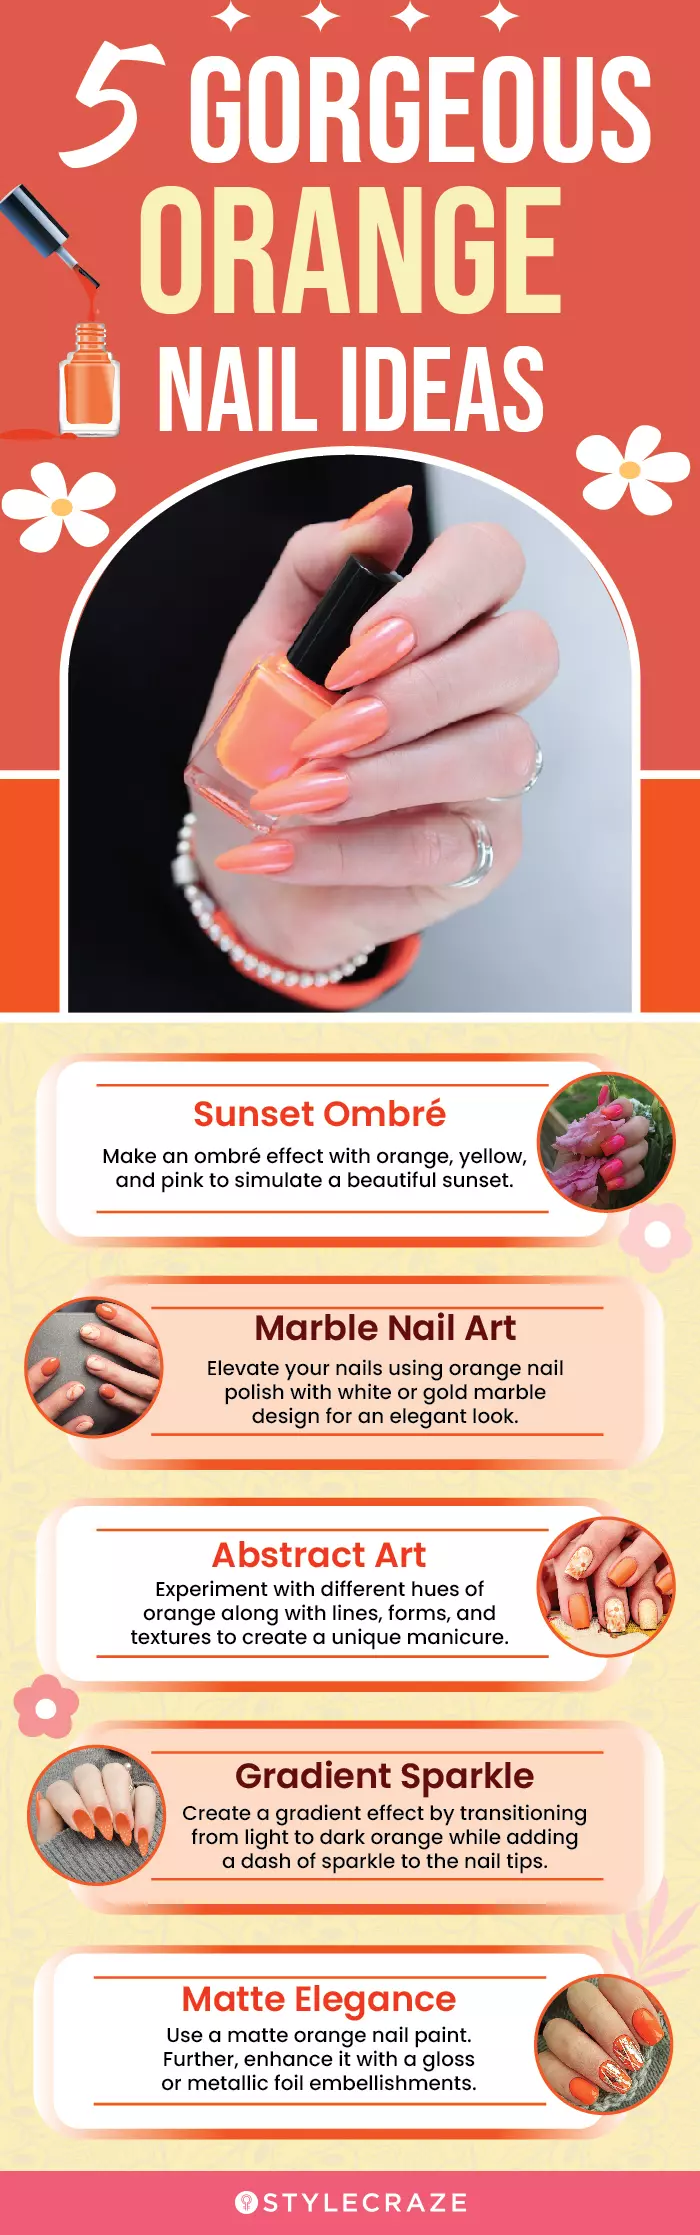 5 Gorgeous Orange Nail Ideas (infographic)